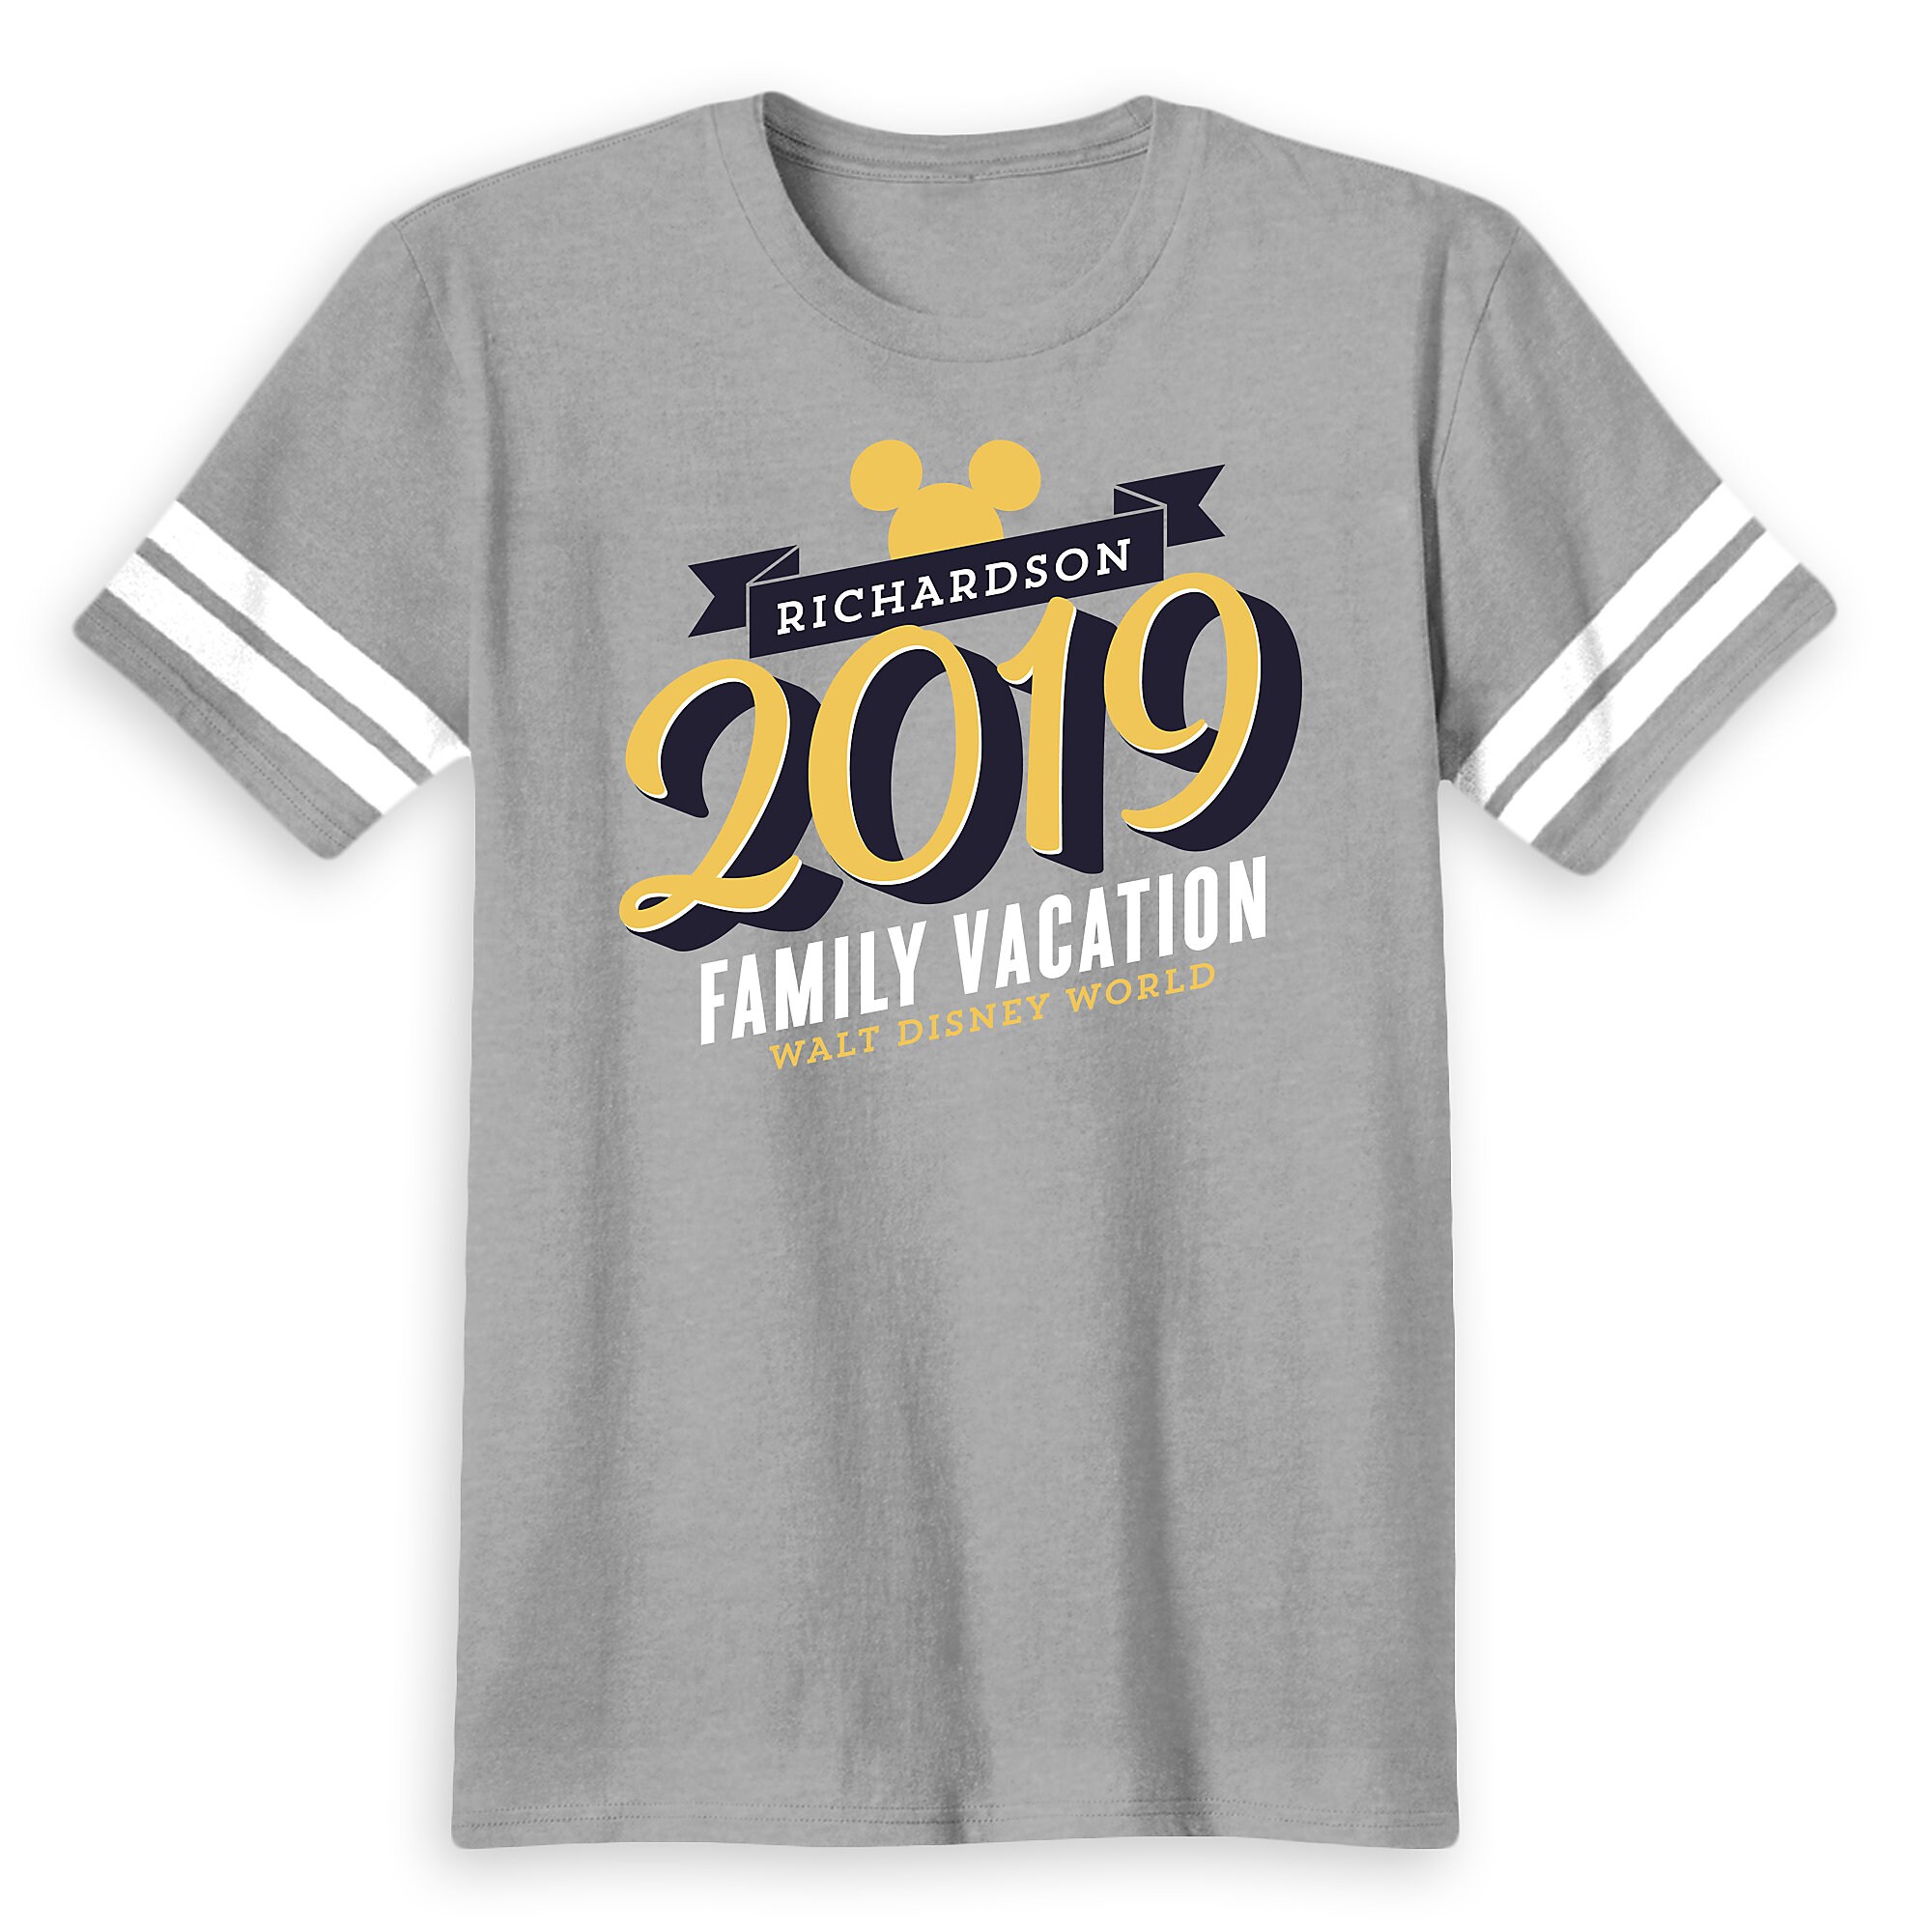 Men's Mickey Mouse Family Vacation Football T-Shirt - Walt Disney World - 2019 - Customized